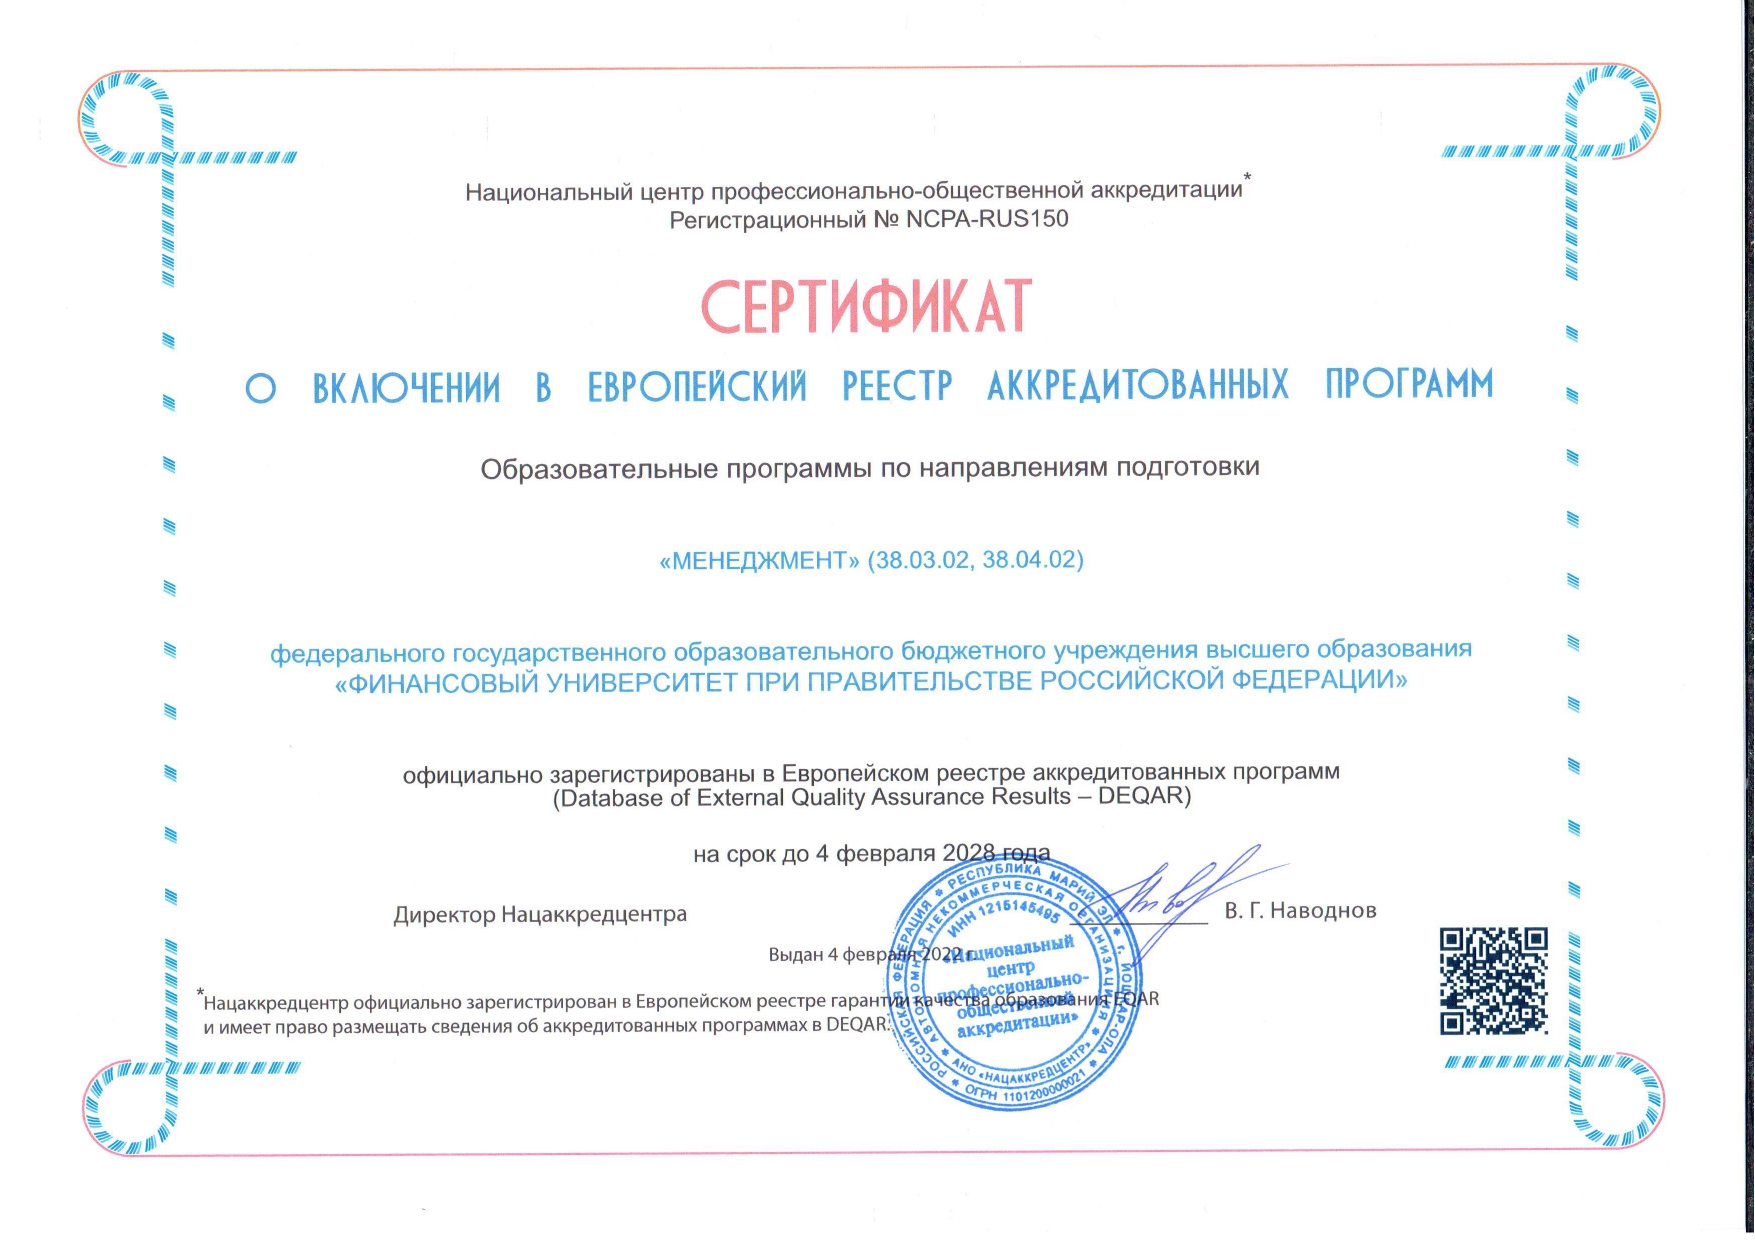 Сертификат о включении в Европейский реестр АП_менеджмент.jpg